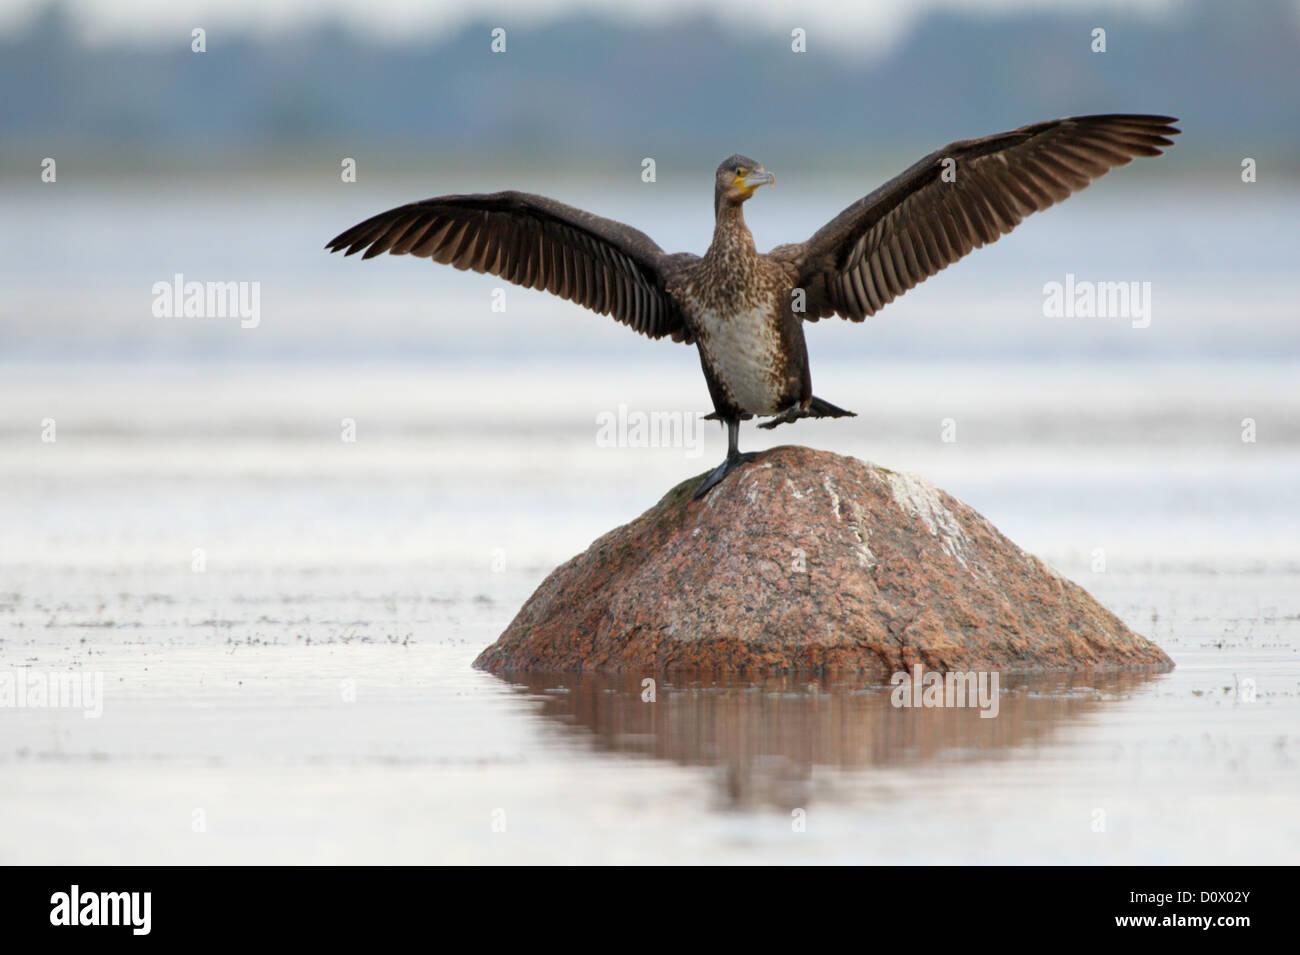 Cormorant (Phalacrocorax carbo), Europe, Estonia. Stock Photo